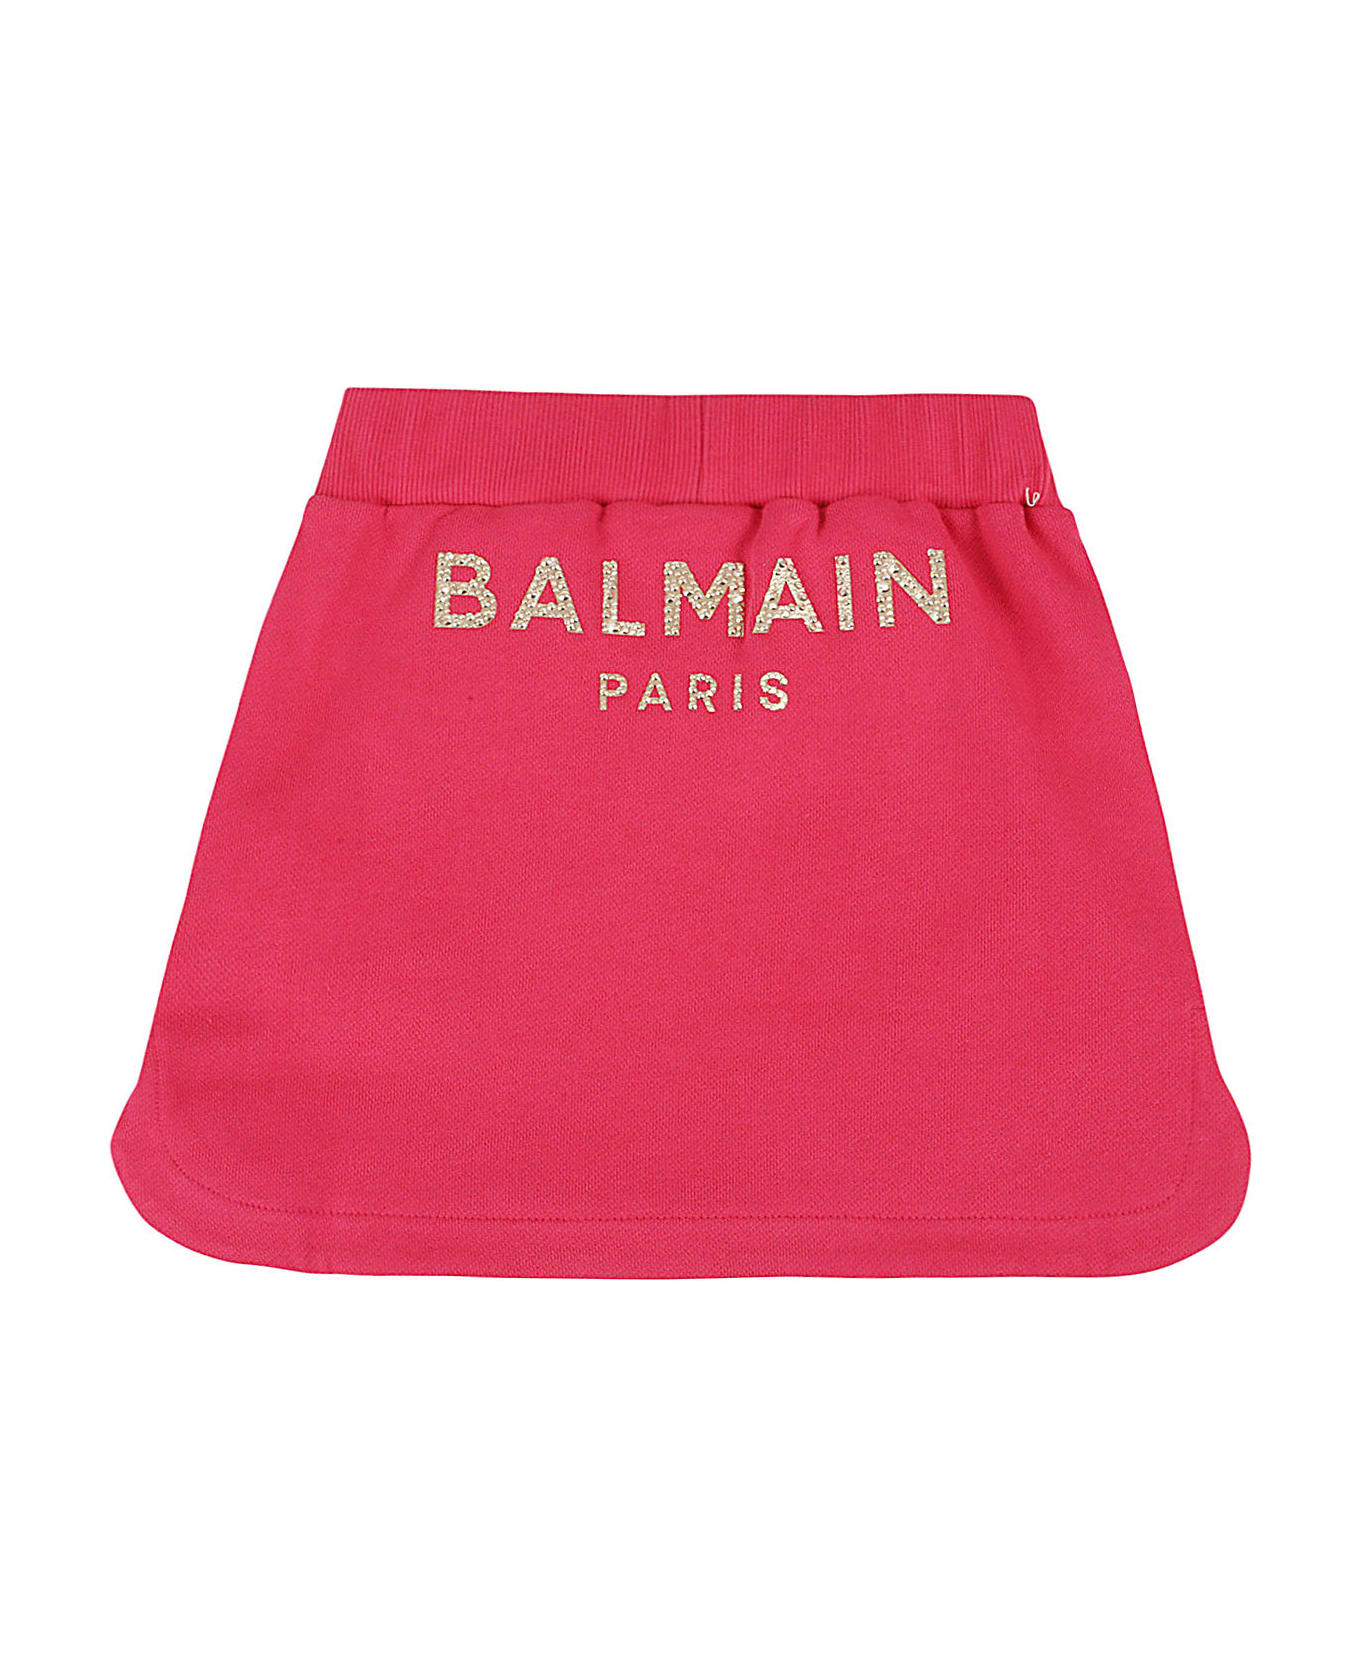 Balmain Skirt - Nor Rubino Oro